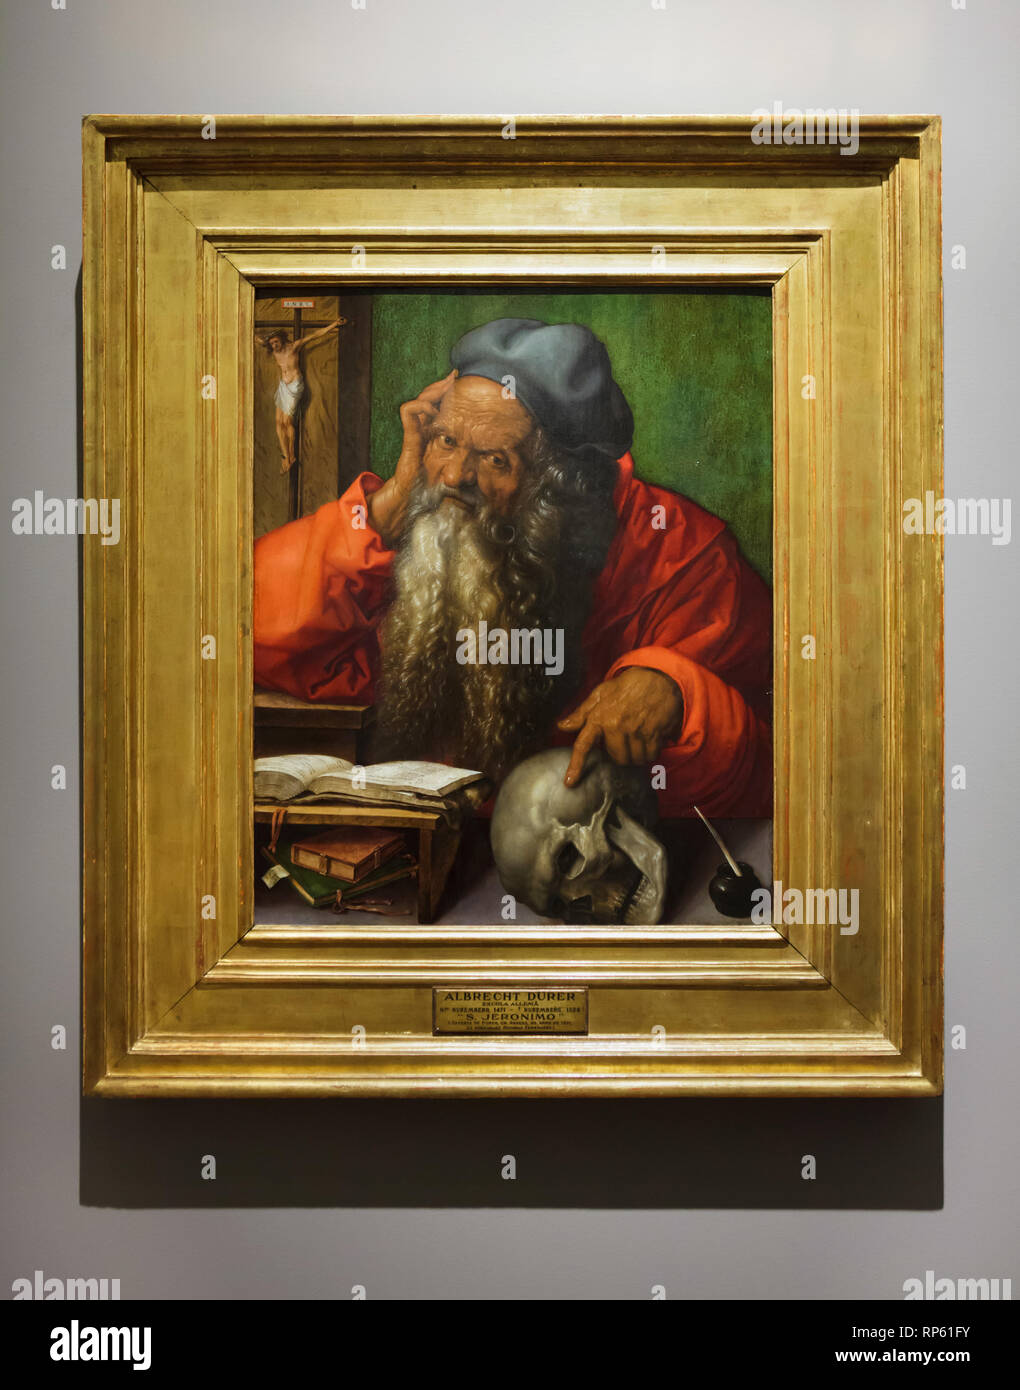 "Saint Jerome" Peinture par peintre allemand Albrecht Dürer (1521) sur l'affichage dans le Musée National d'Art Ancien (Museu Nacional de Arte Antiga) à Lisbonne, Portugal. Banque D'Images